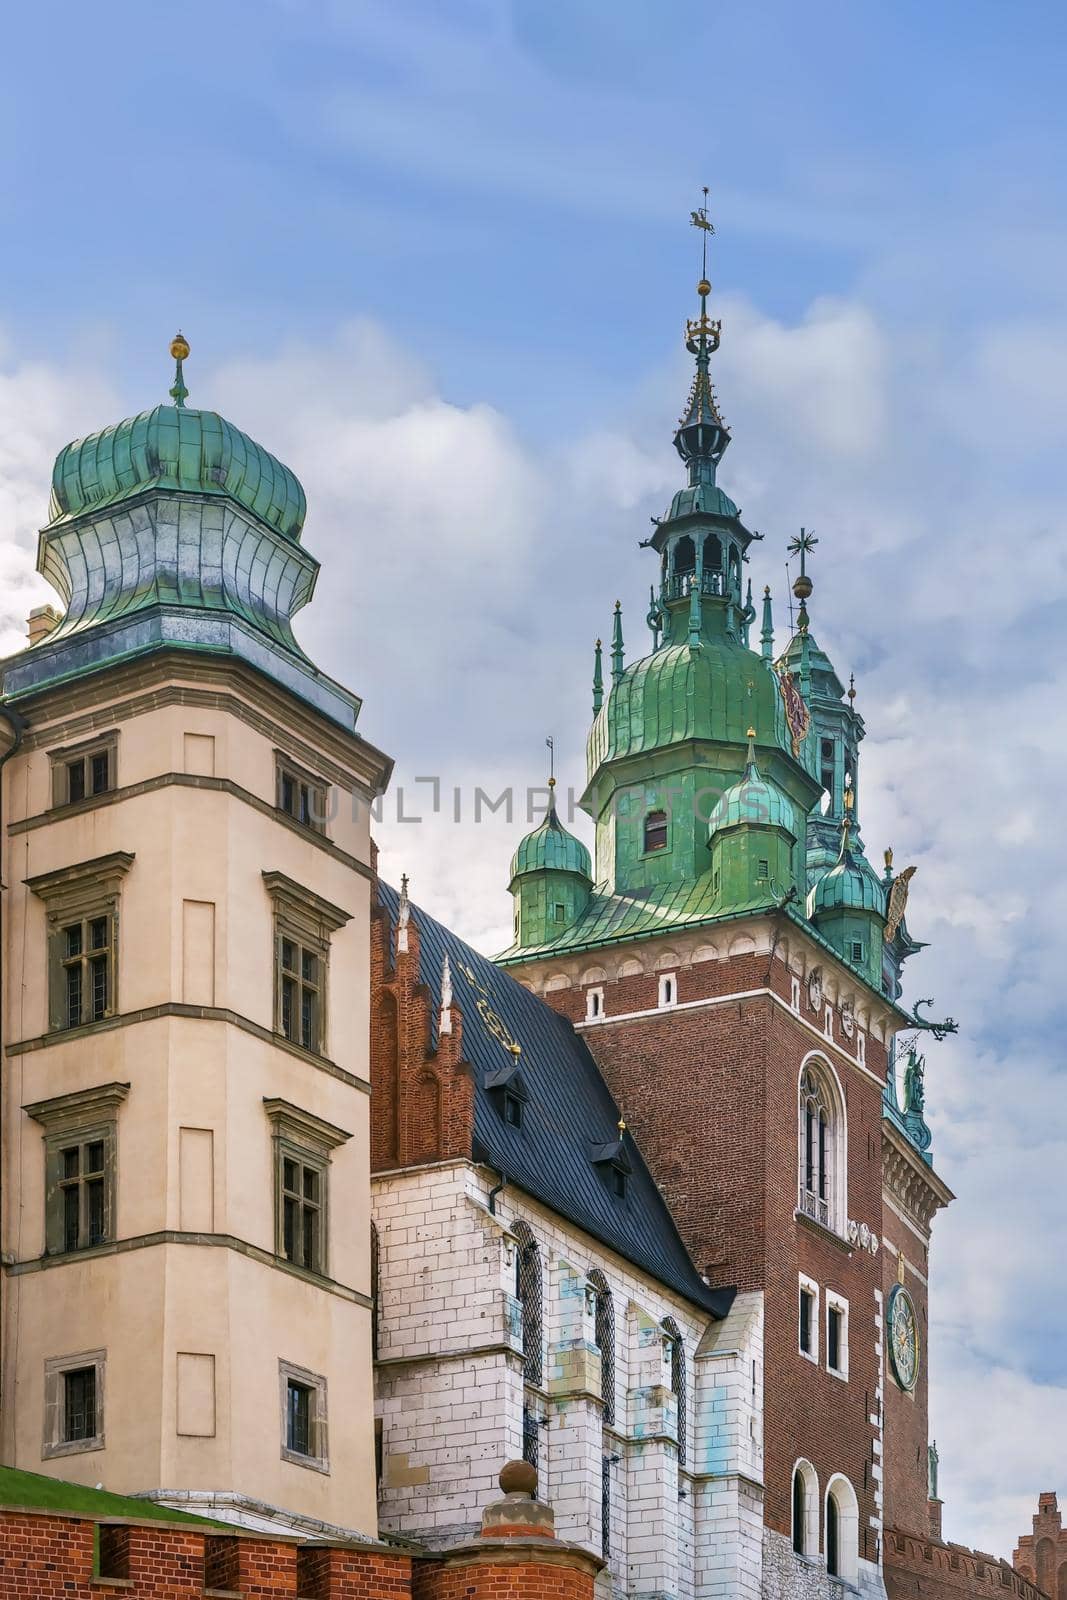 Sigismund Tower, Krakow, Poland by borisb17